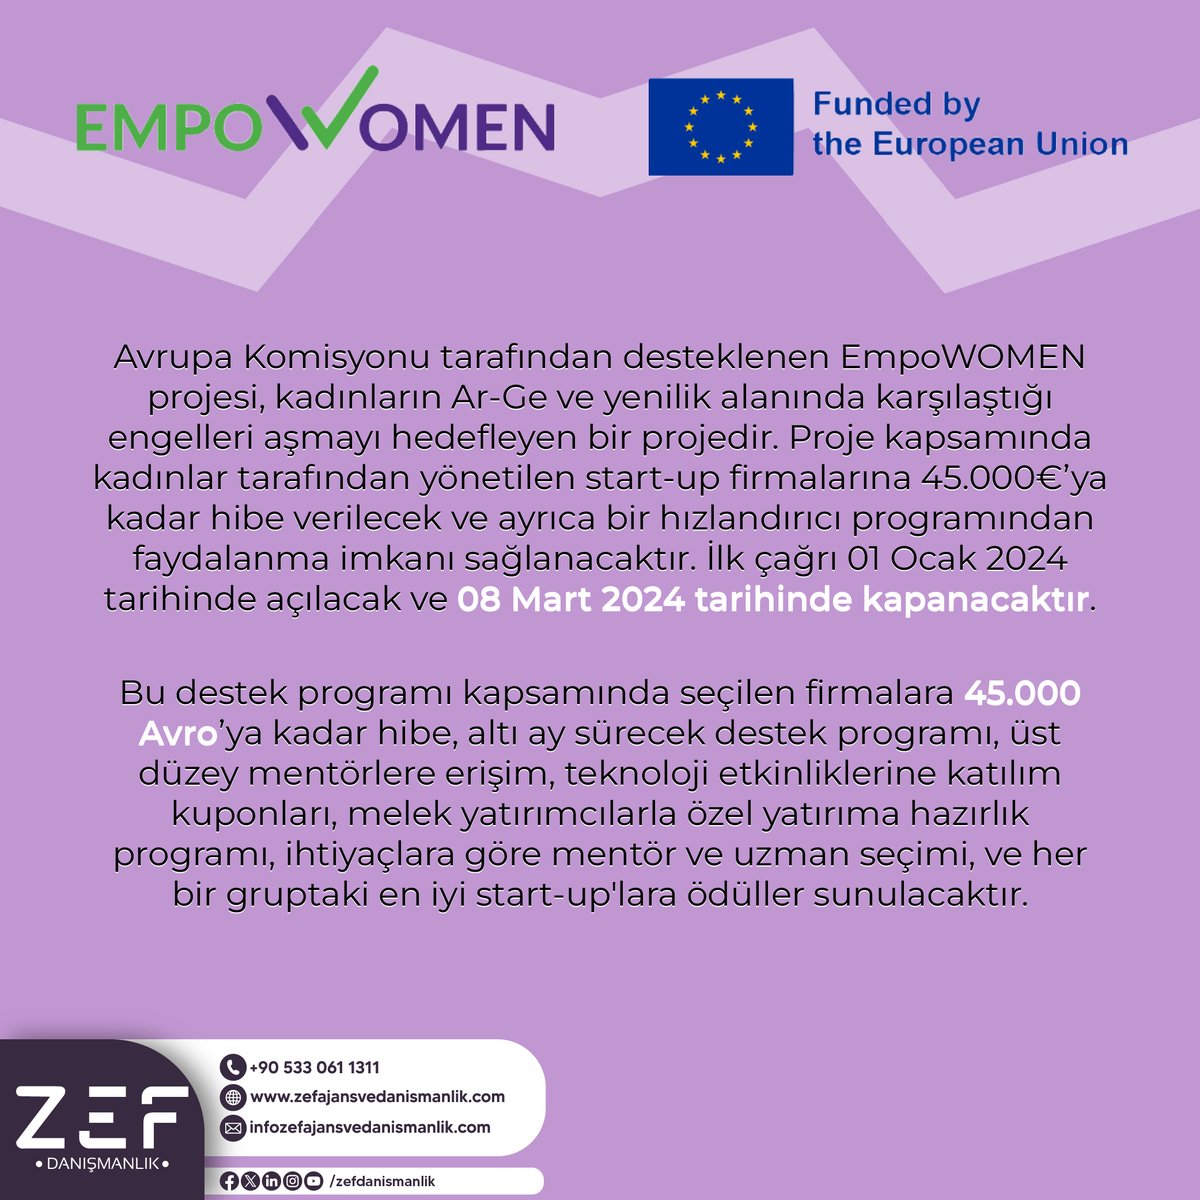 EmpoWOMEN Projesi ile derin teknoloji girişimciliğinde fırsat eşitliği için kadın girişimcilerin önündeki engelleri aşmayı hedefliyoruz.
Avrupa Komisyonu'nun EIC Programı kapsamında 45.000€'ya kadar hibe ve hızlandırıcı program için başvurular >